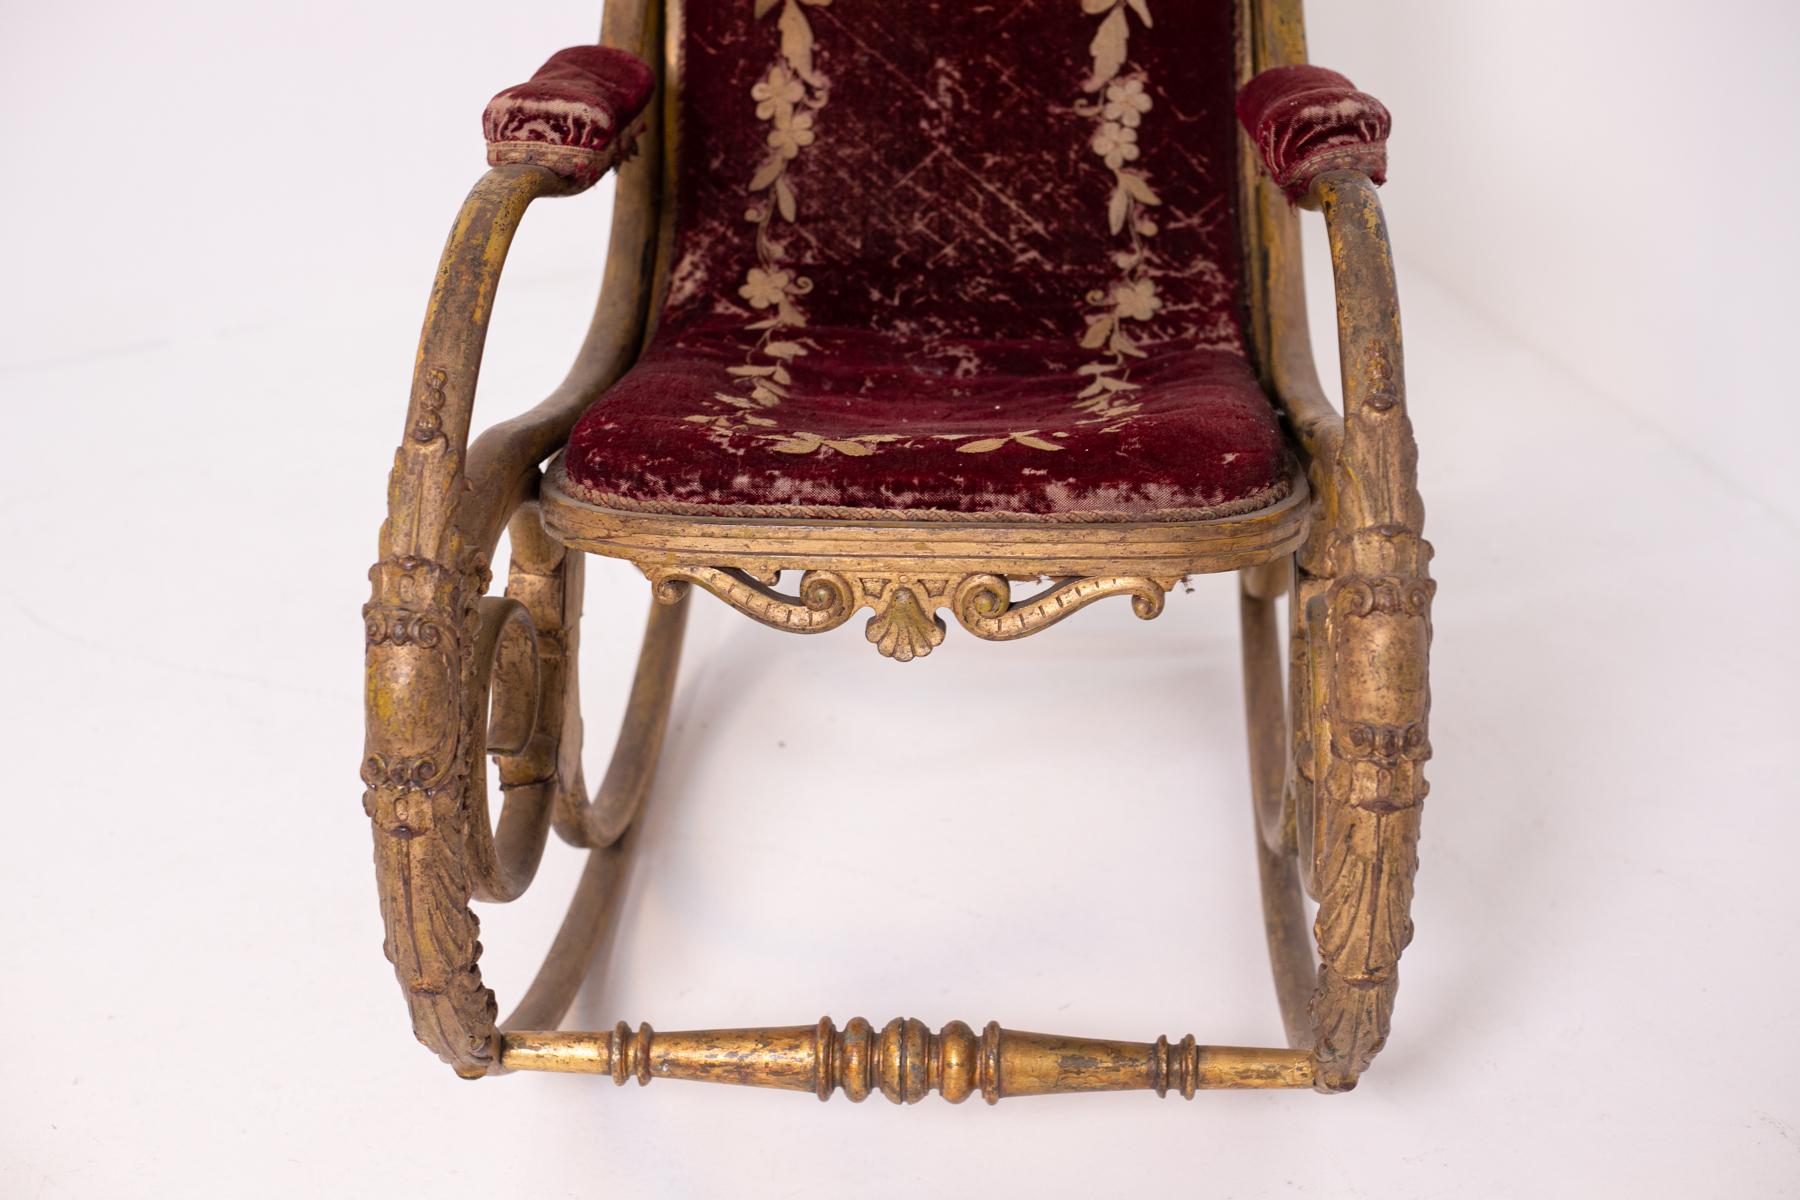 Très rare fauteuil à bascule fabriqué et conçu par Michel Thonet et Anton Fix , vers 1860.
Ce magnifique rocking-chair a été réalisé en bois courbé, une technique qui consiste à traiter le bois à la vapeur pour qu'il puisse se plier, et qui a été